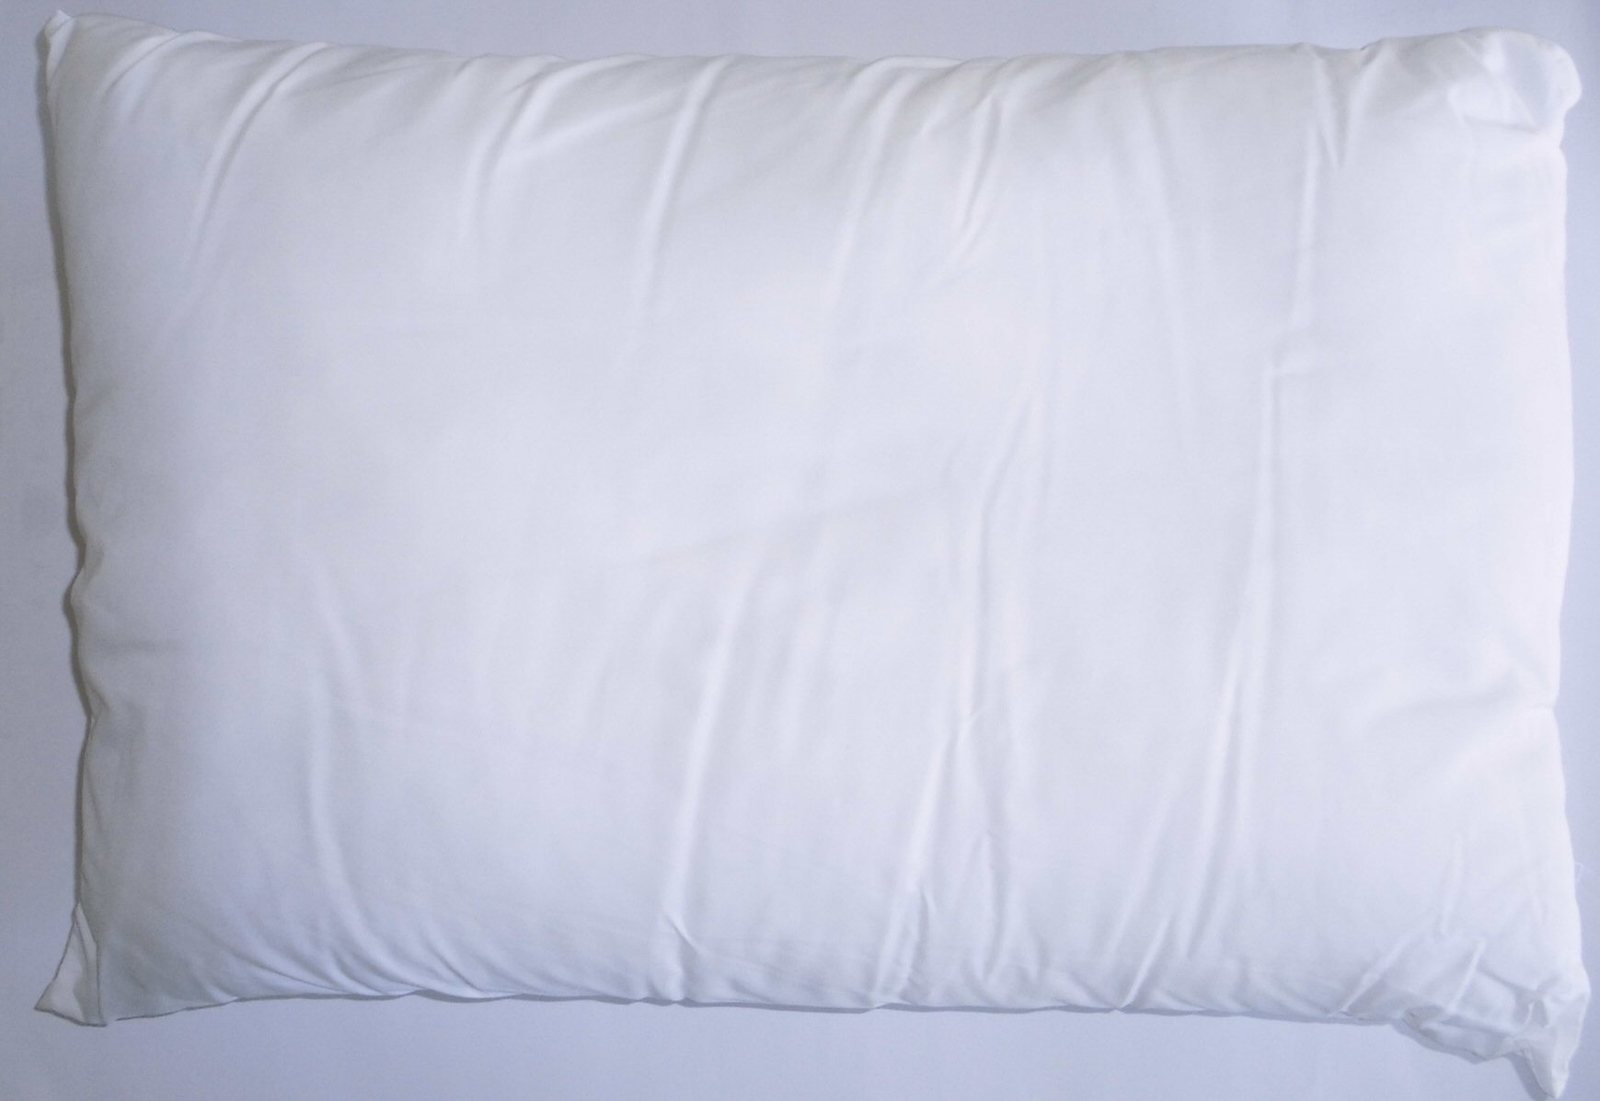 ポリエステル枕 白 ヌード 35×50cm 高めボリュームタイプ